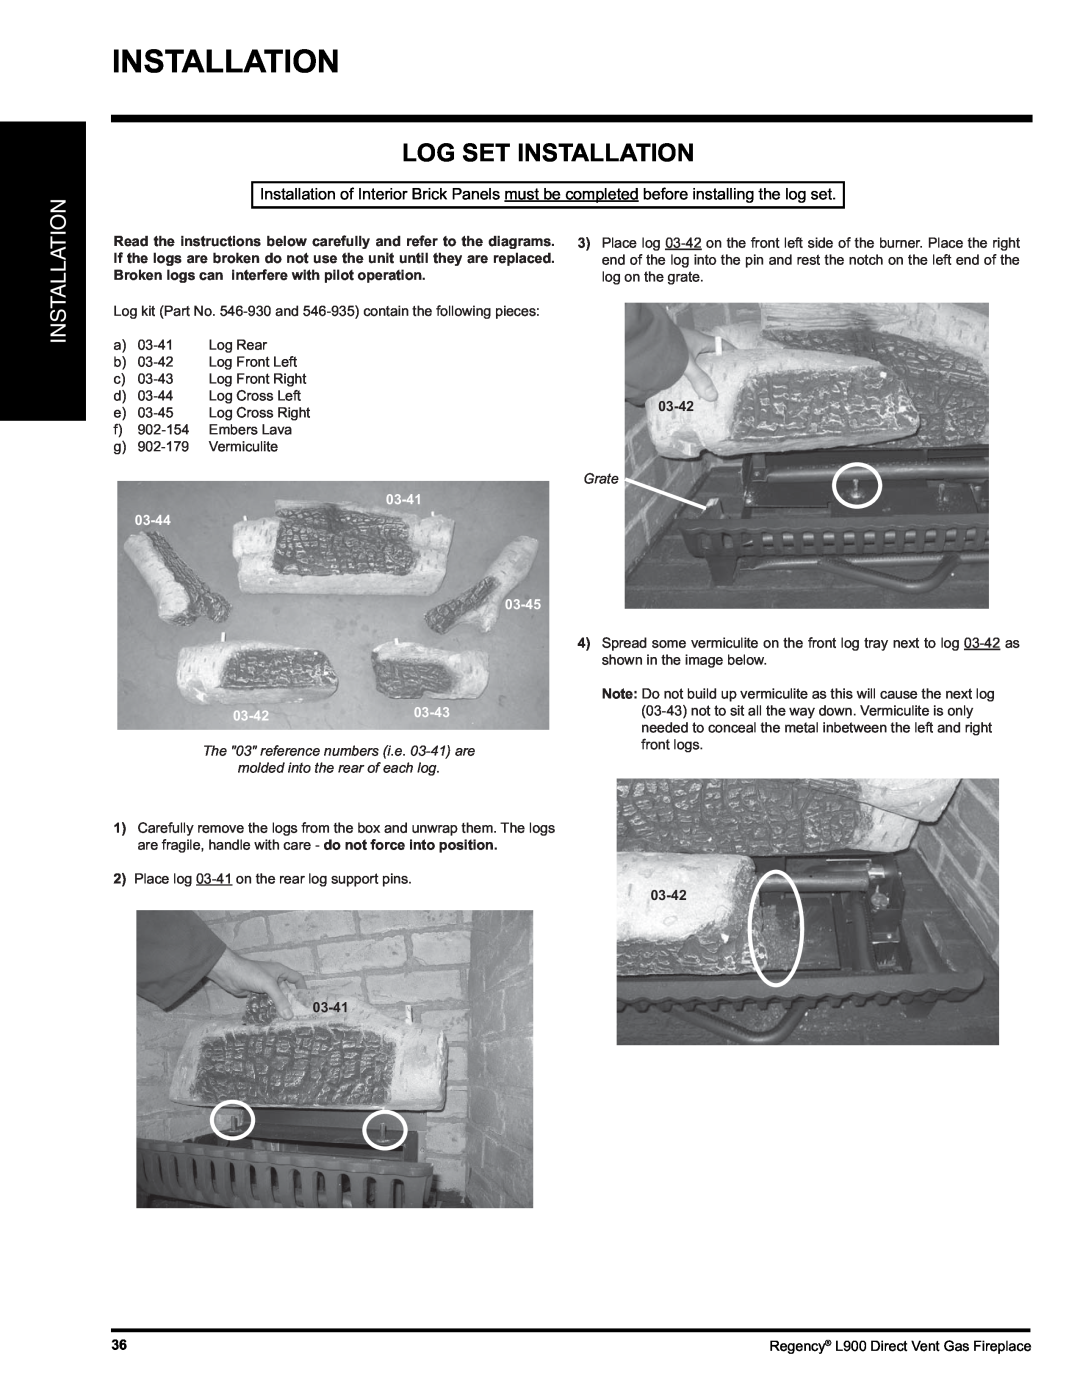 Regency L900-LP, L900-NG installation manual Log Set Installation, 03-42, 03-41 